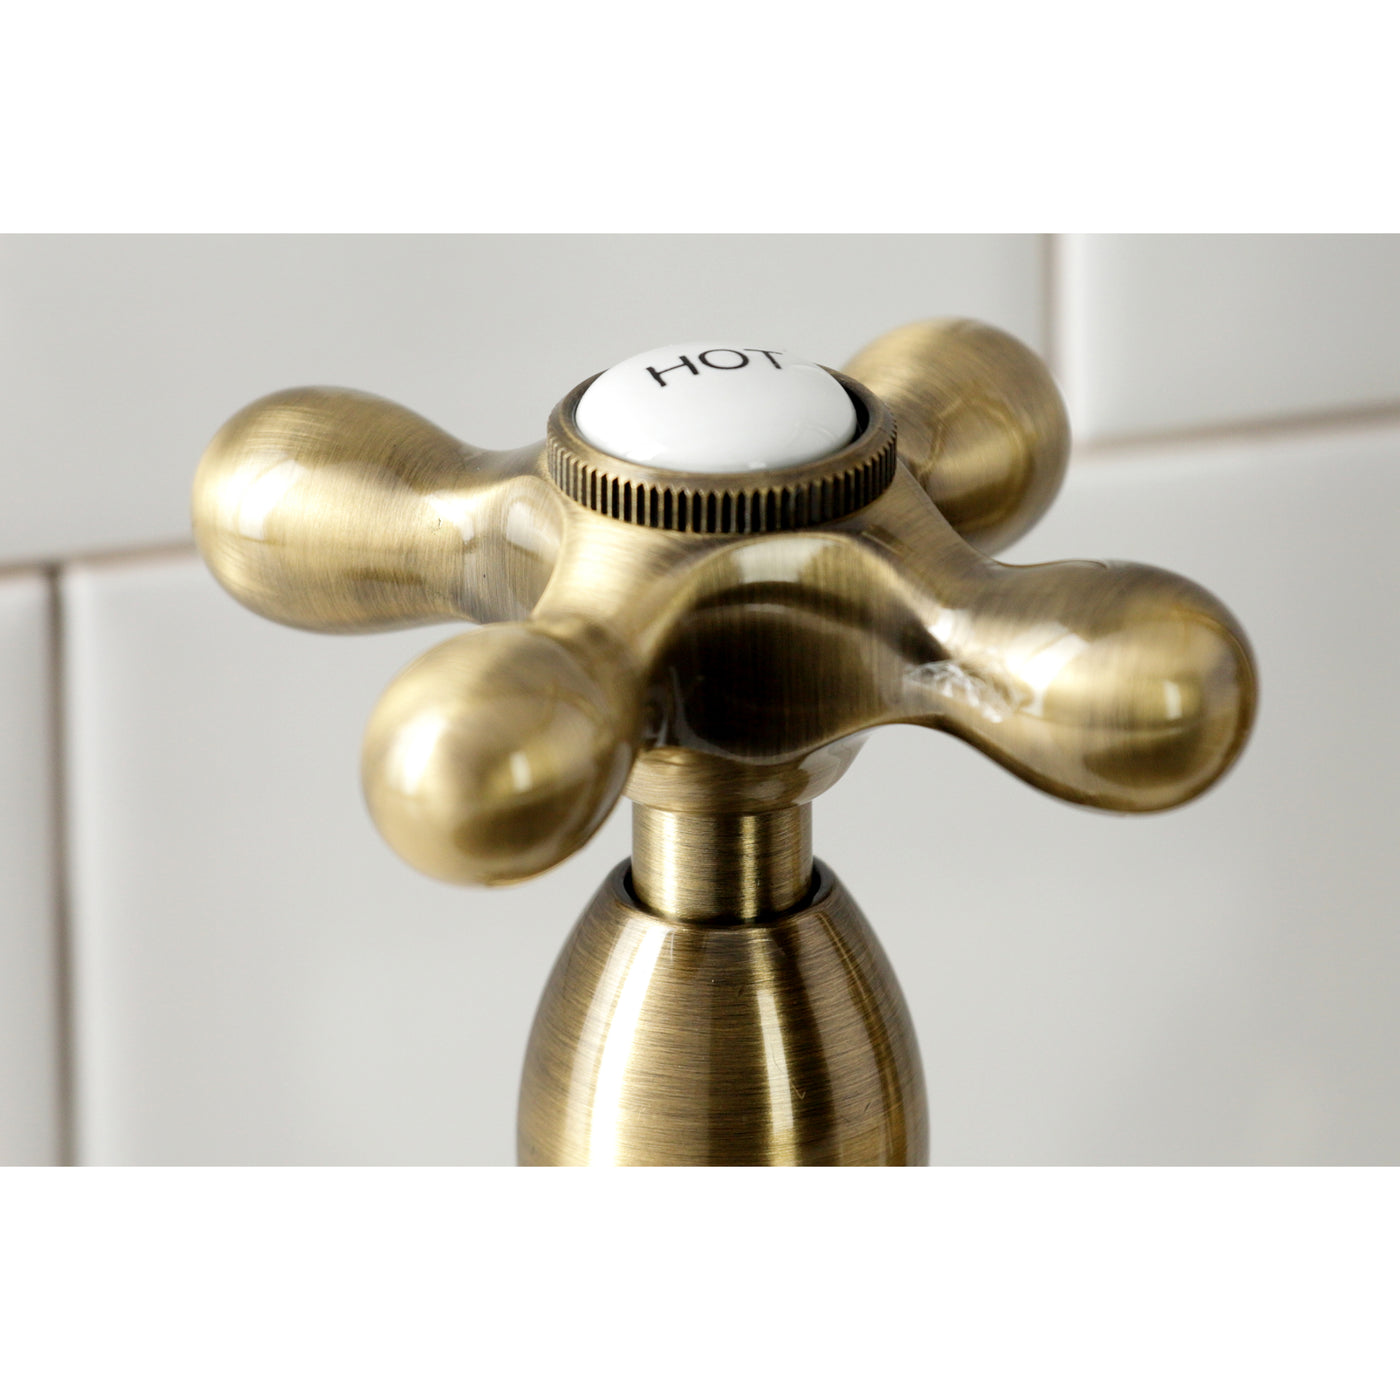 Elements of Design ES1273AXBS Bridge Kitchen Faucet with Brass Sprayer, Antique Brass